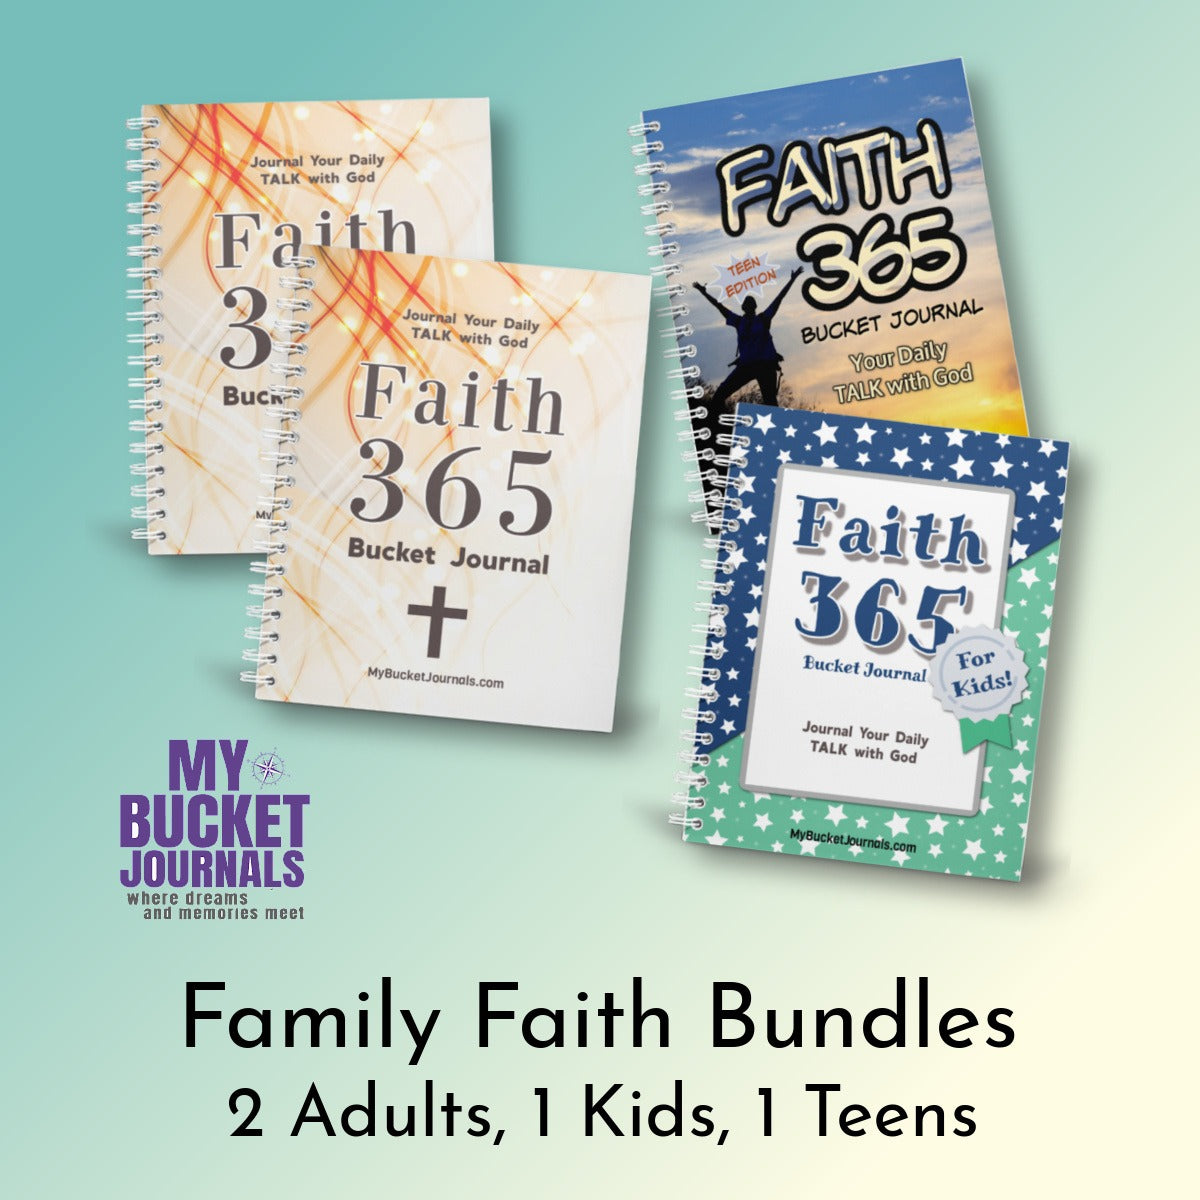 Family Faith Bundles - 2 Adult + 1 Teen + 1 Kid